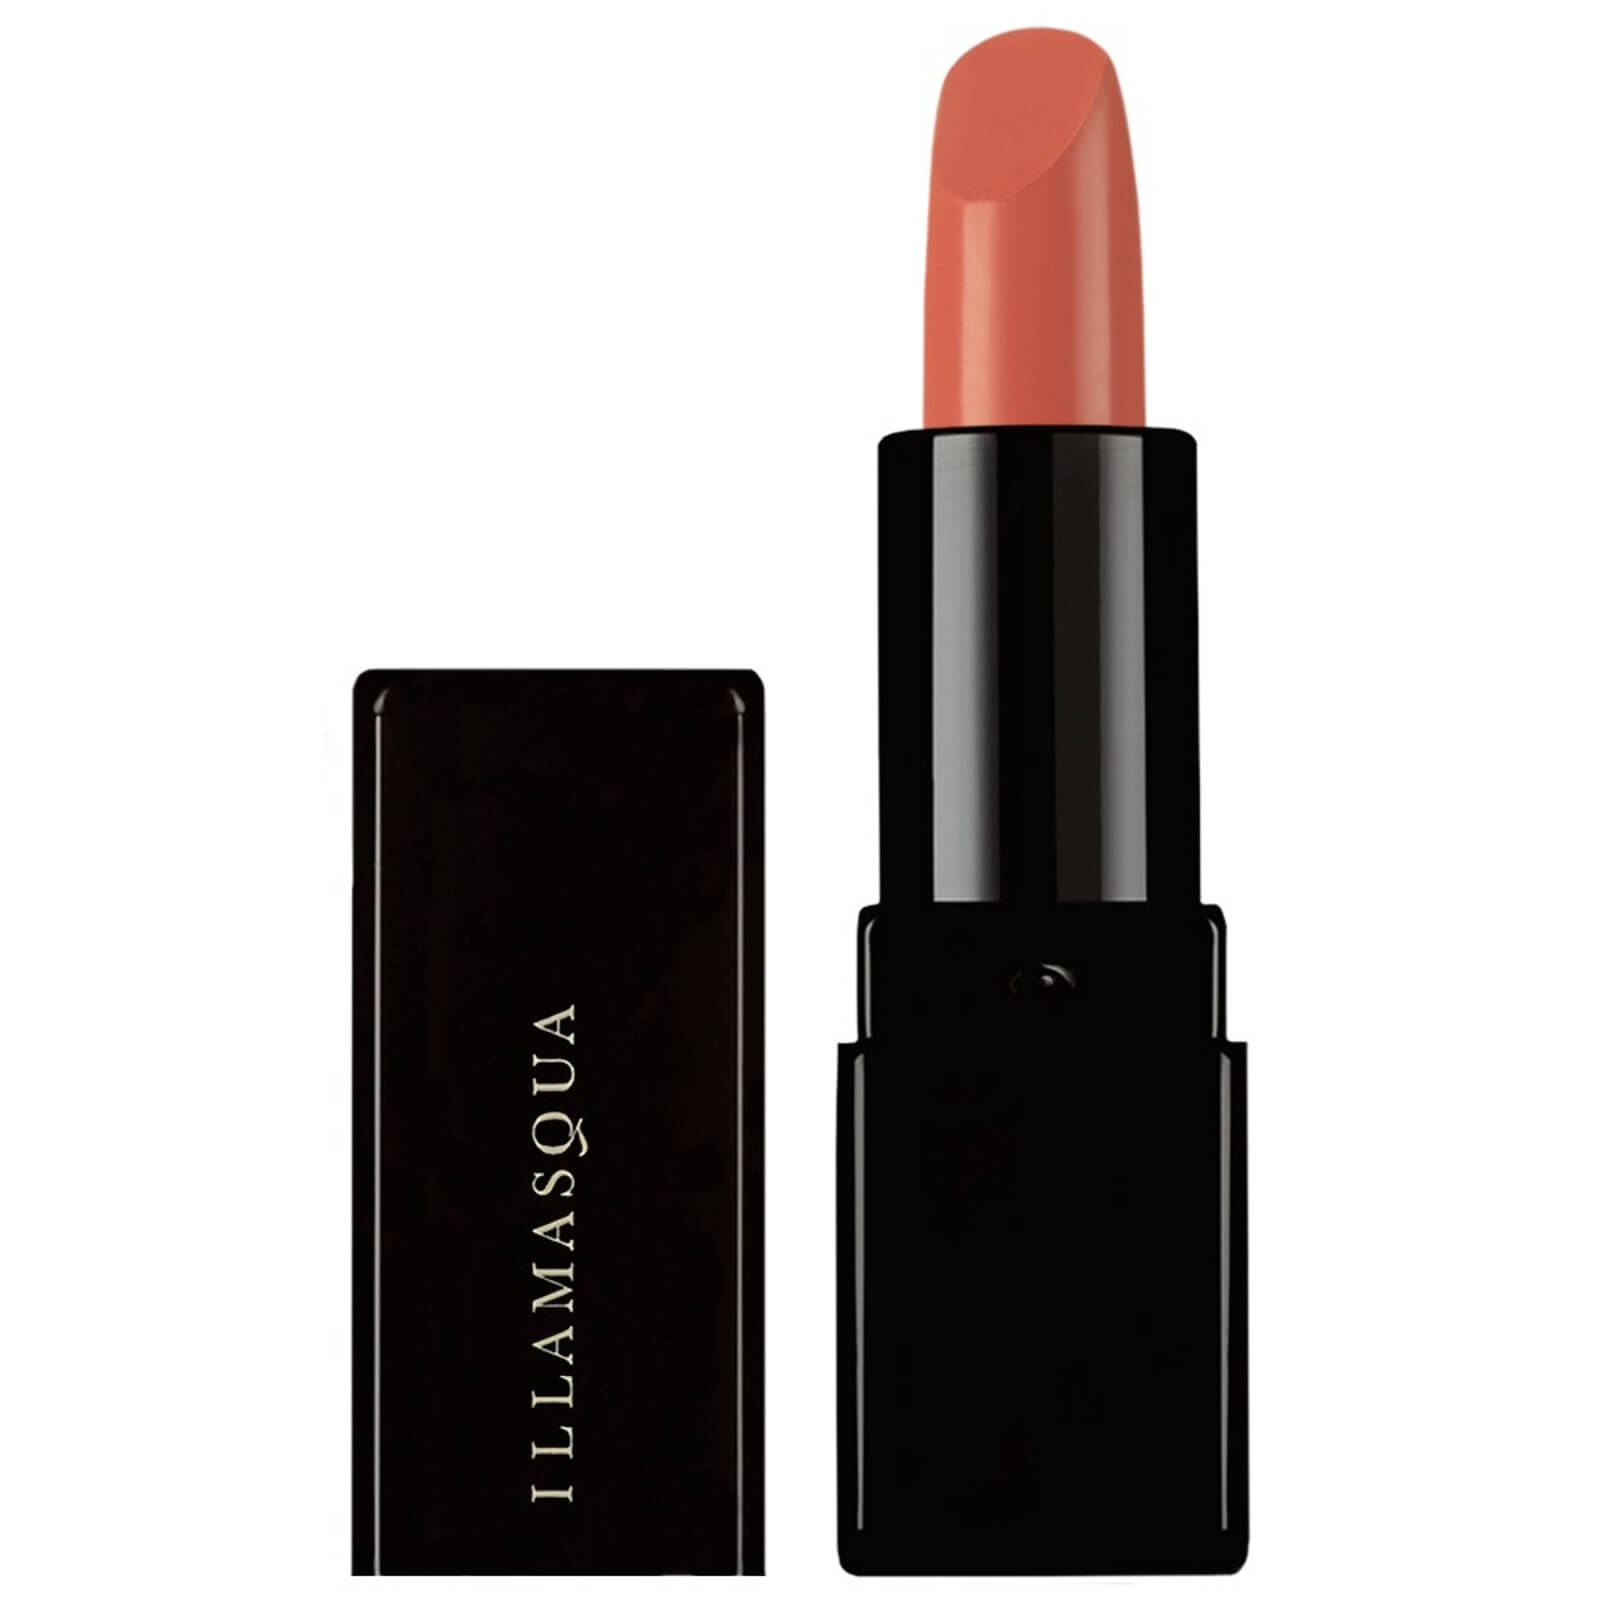 Illamasqua Antimatter Lipstick - Binary